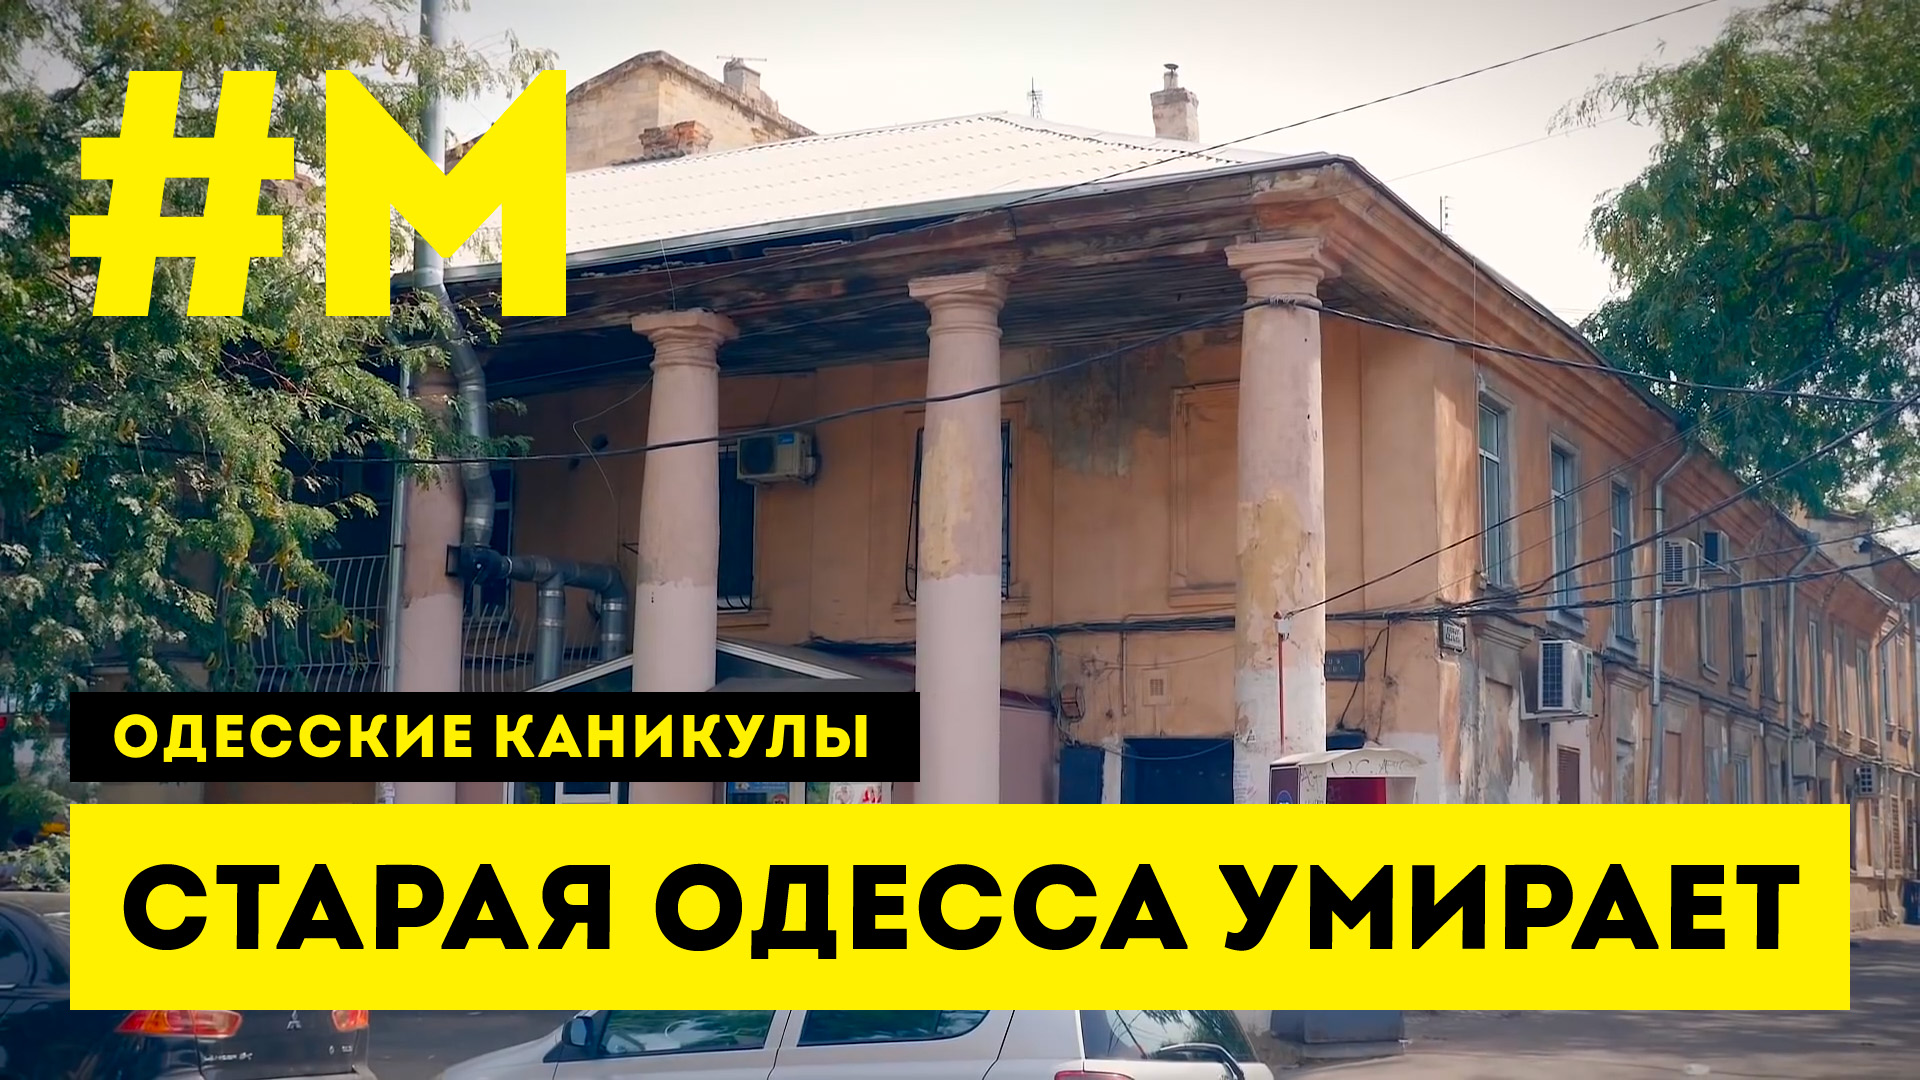 #МОНТЯН: Одесса, которой скоро не станет… ? #ОдесскиеКаникулы [4.10.2020 г.]